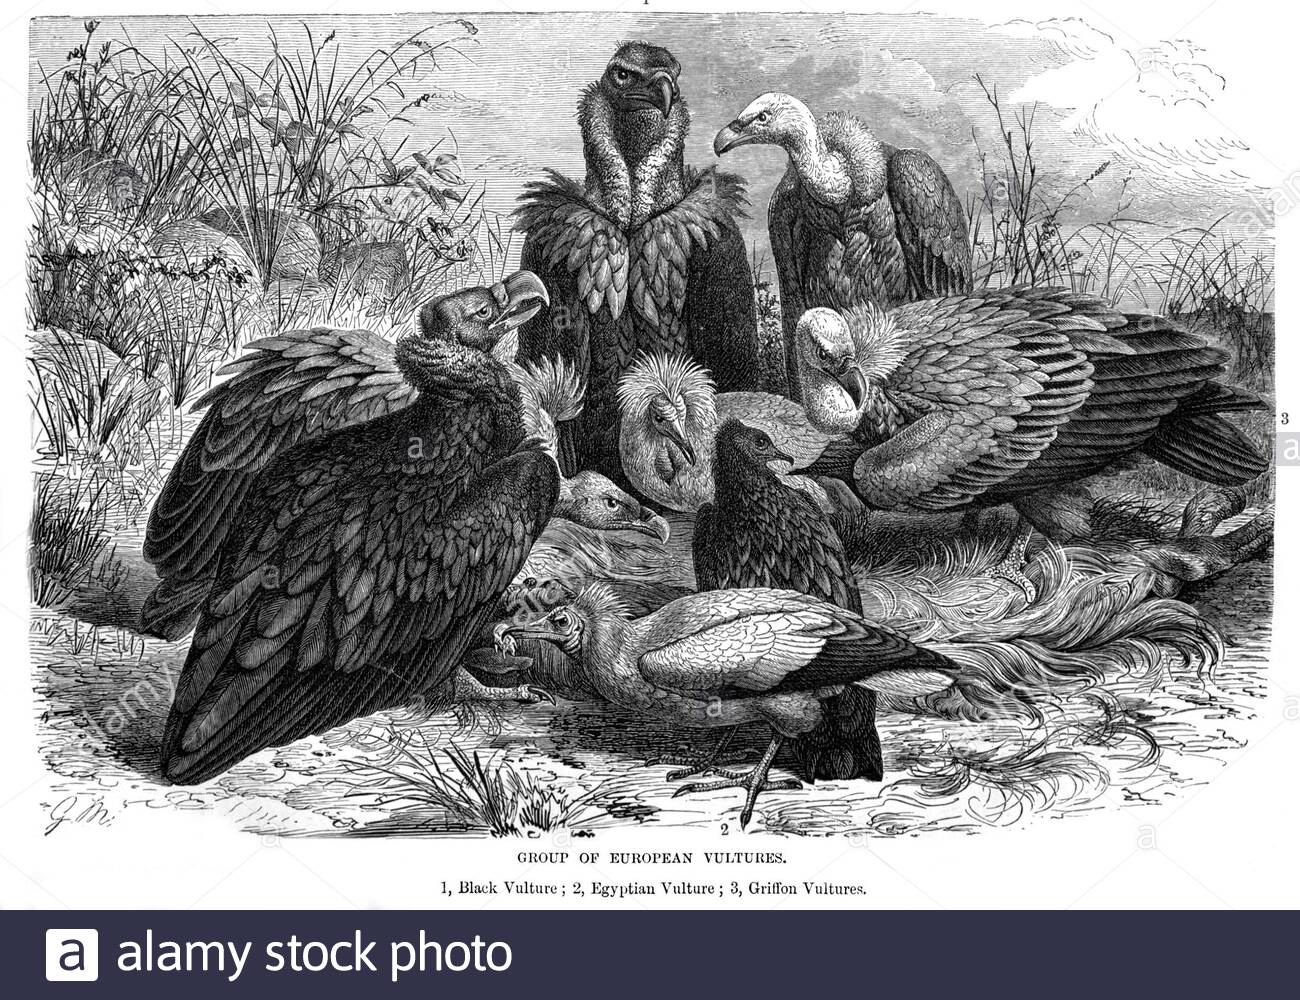 Gruppo di avvoltoi europei, illustrazione d'annata del 1895 Foto Stock